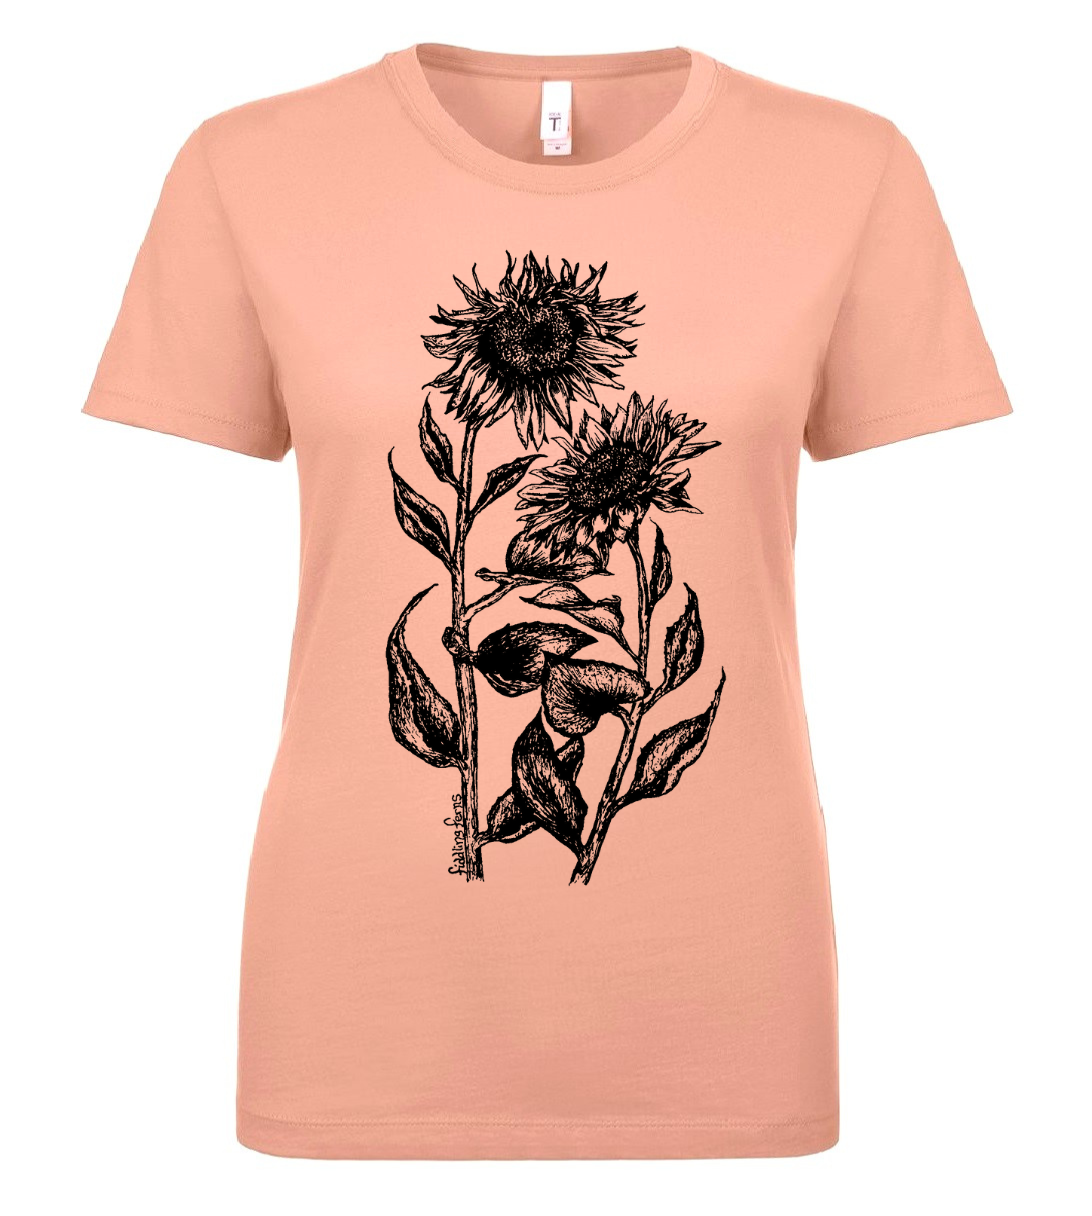 Sunflowers Ladies T Shirt